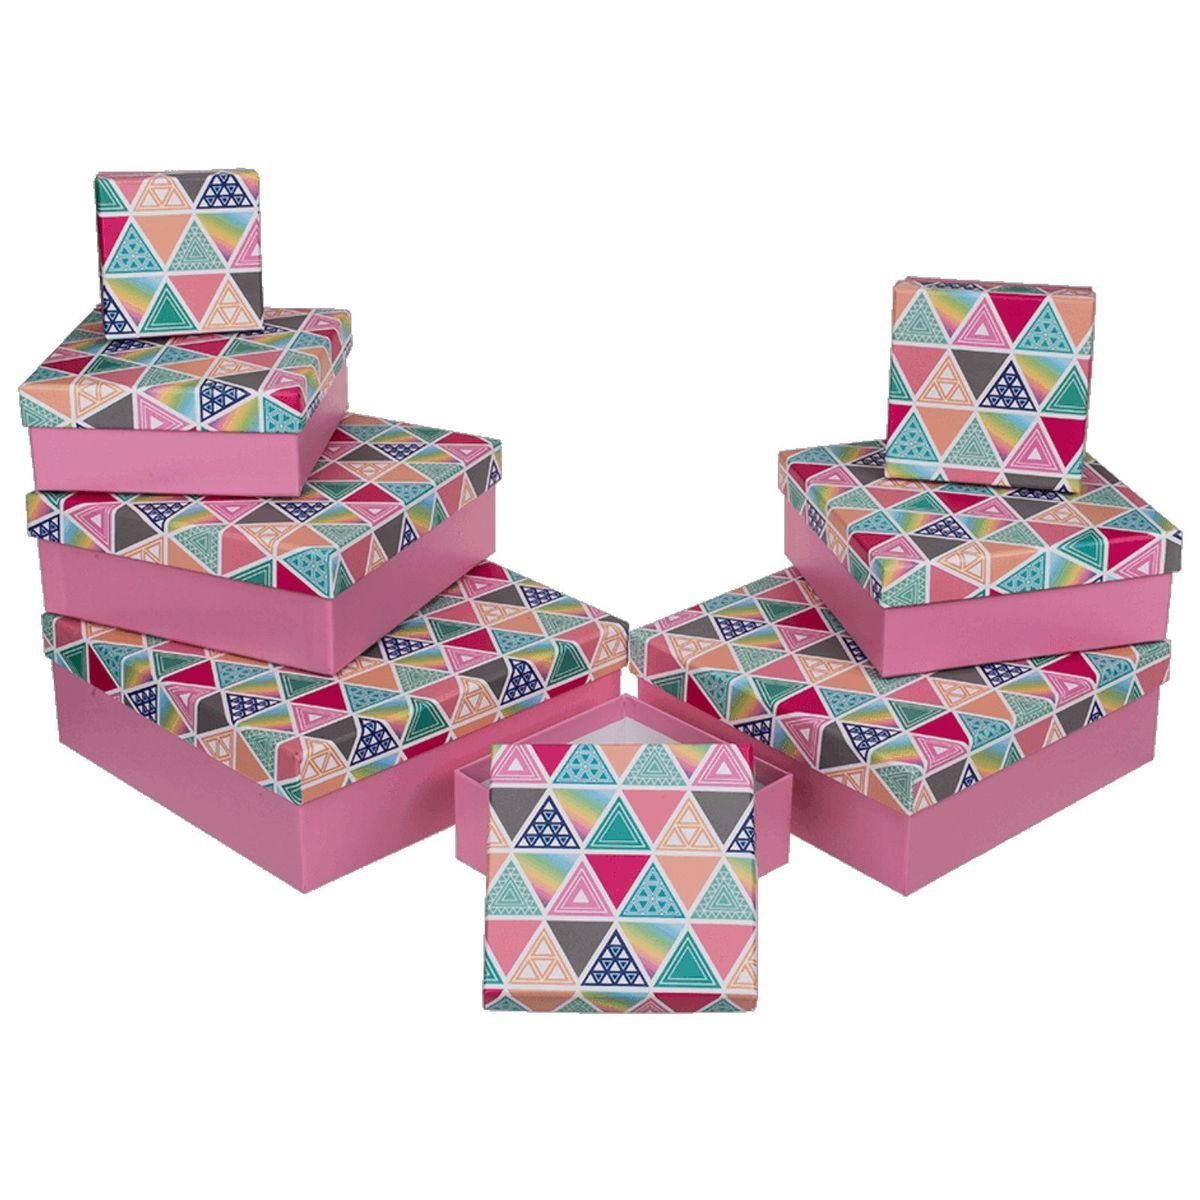 Out of the Blue Stapelbox Geschenkkarton Set mit 8 verschiedenen Größen in Rosa mit Dreiecken, mit abnehmbaren Deckel